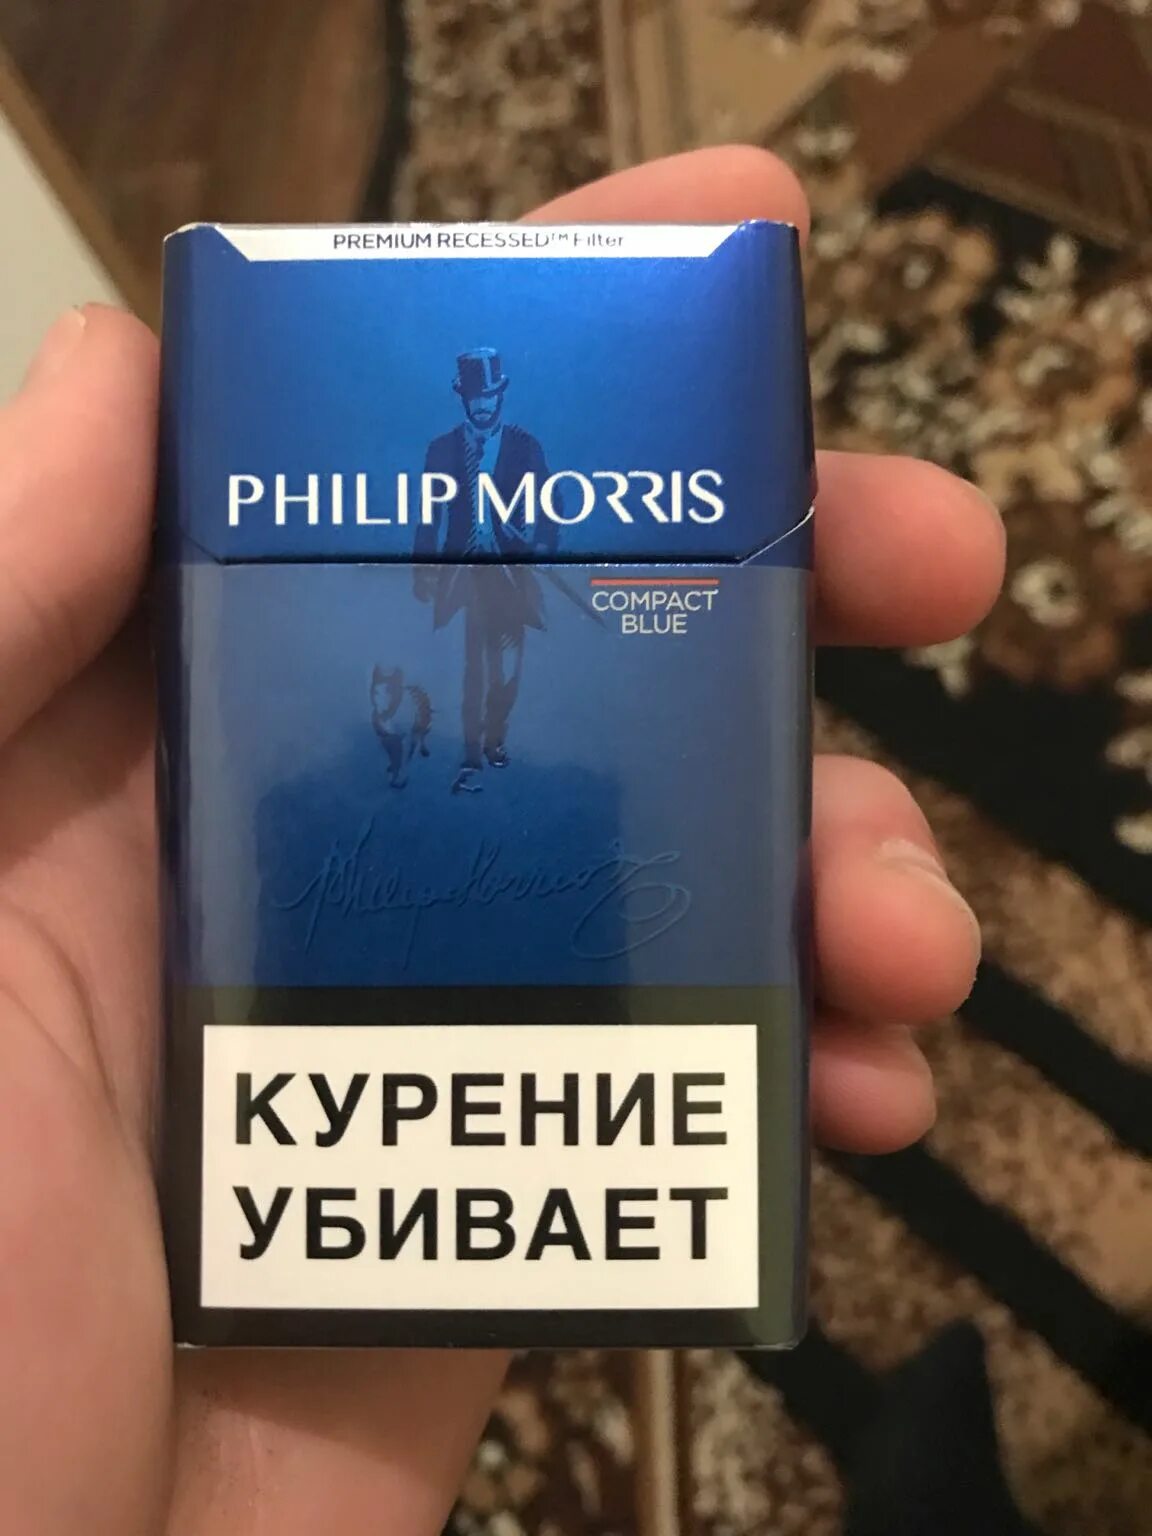 Моррис сигареты компакт. Филипс Морис компакт Блю. Сигареты с фильтром "Philip Morris Compact Blue".